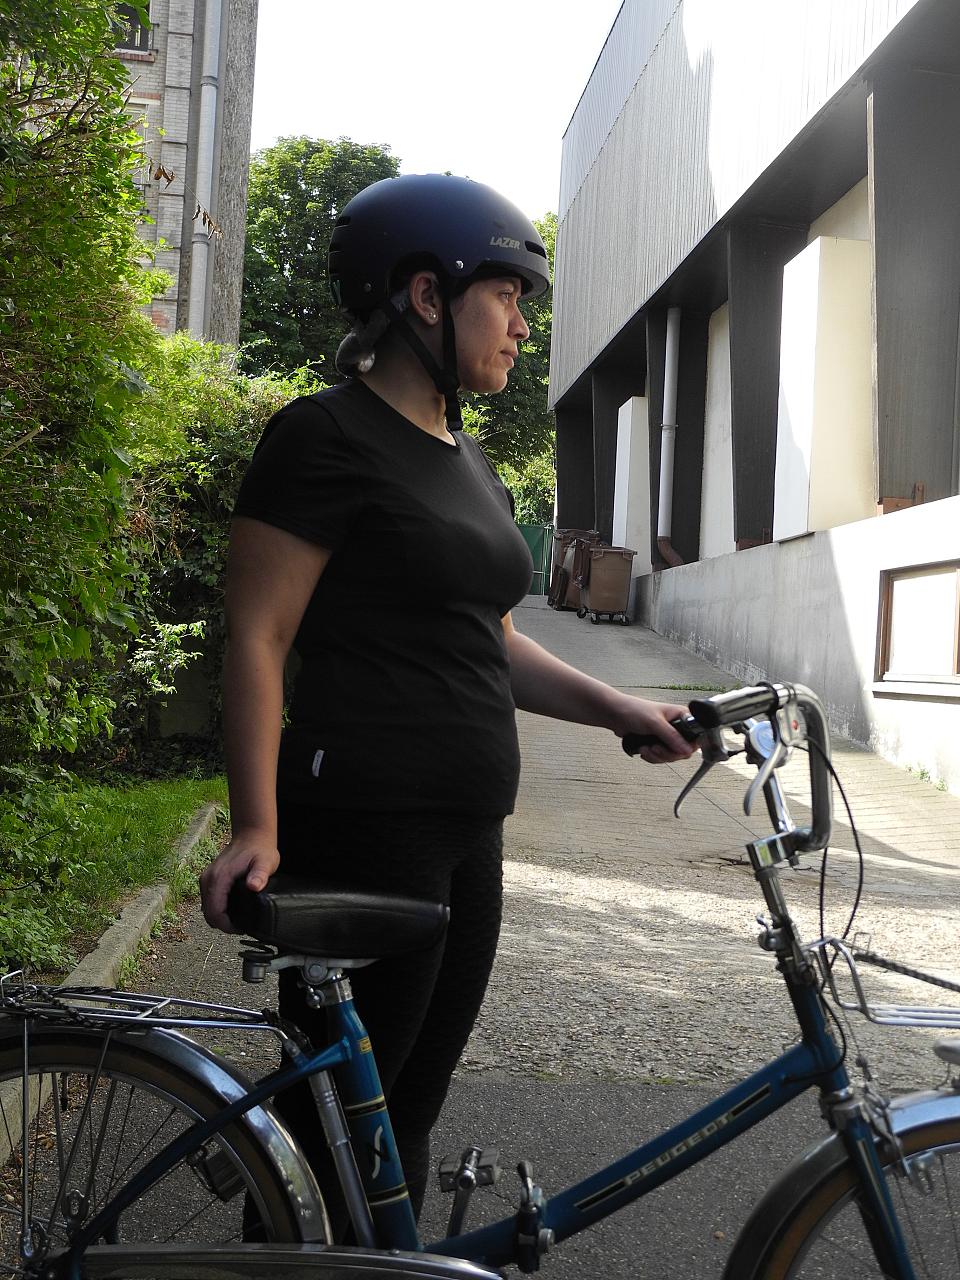 Une femme habillée en noir et de profil, porte un casque et tient un vélo bleu à côté d'elle.